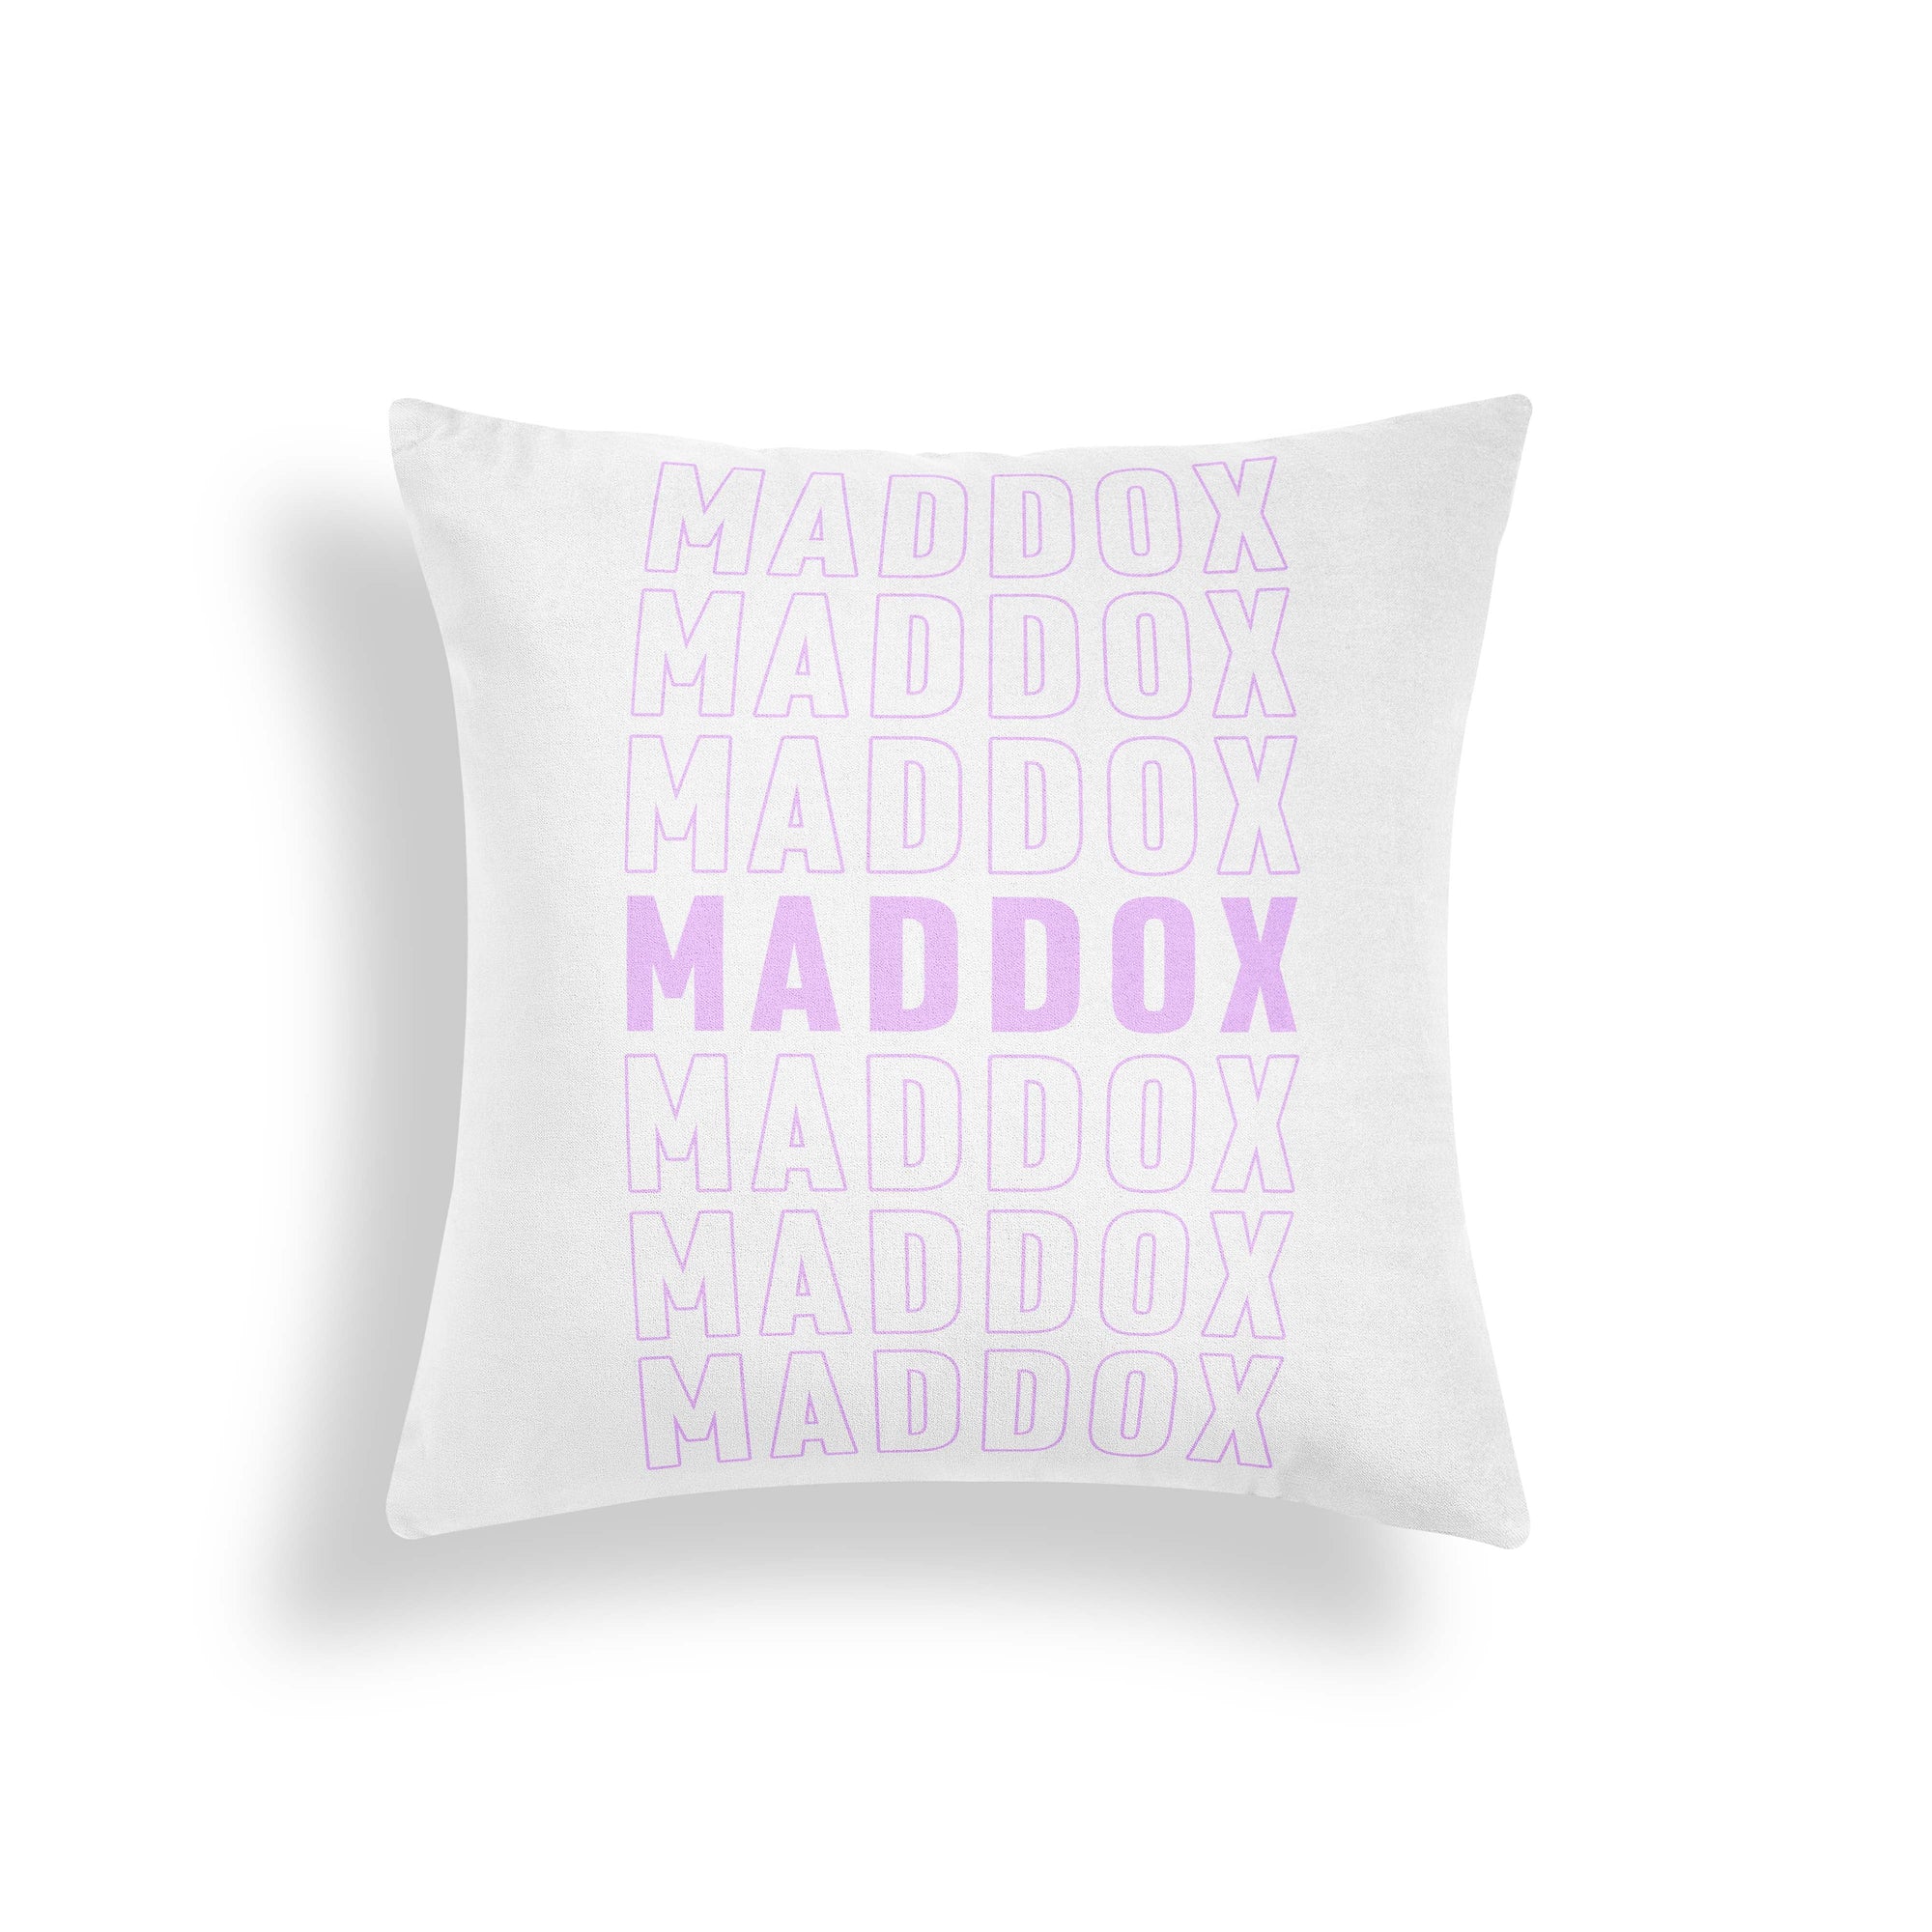 Let's Go Brandon - cursive font women's - MAGA' Throw Pillow Cover 18” x  18”